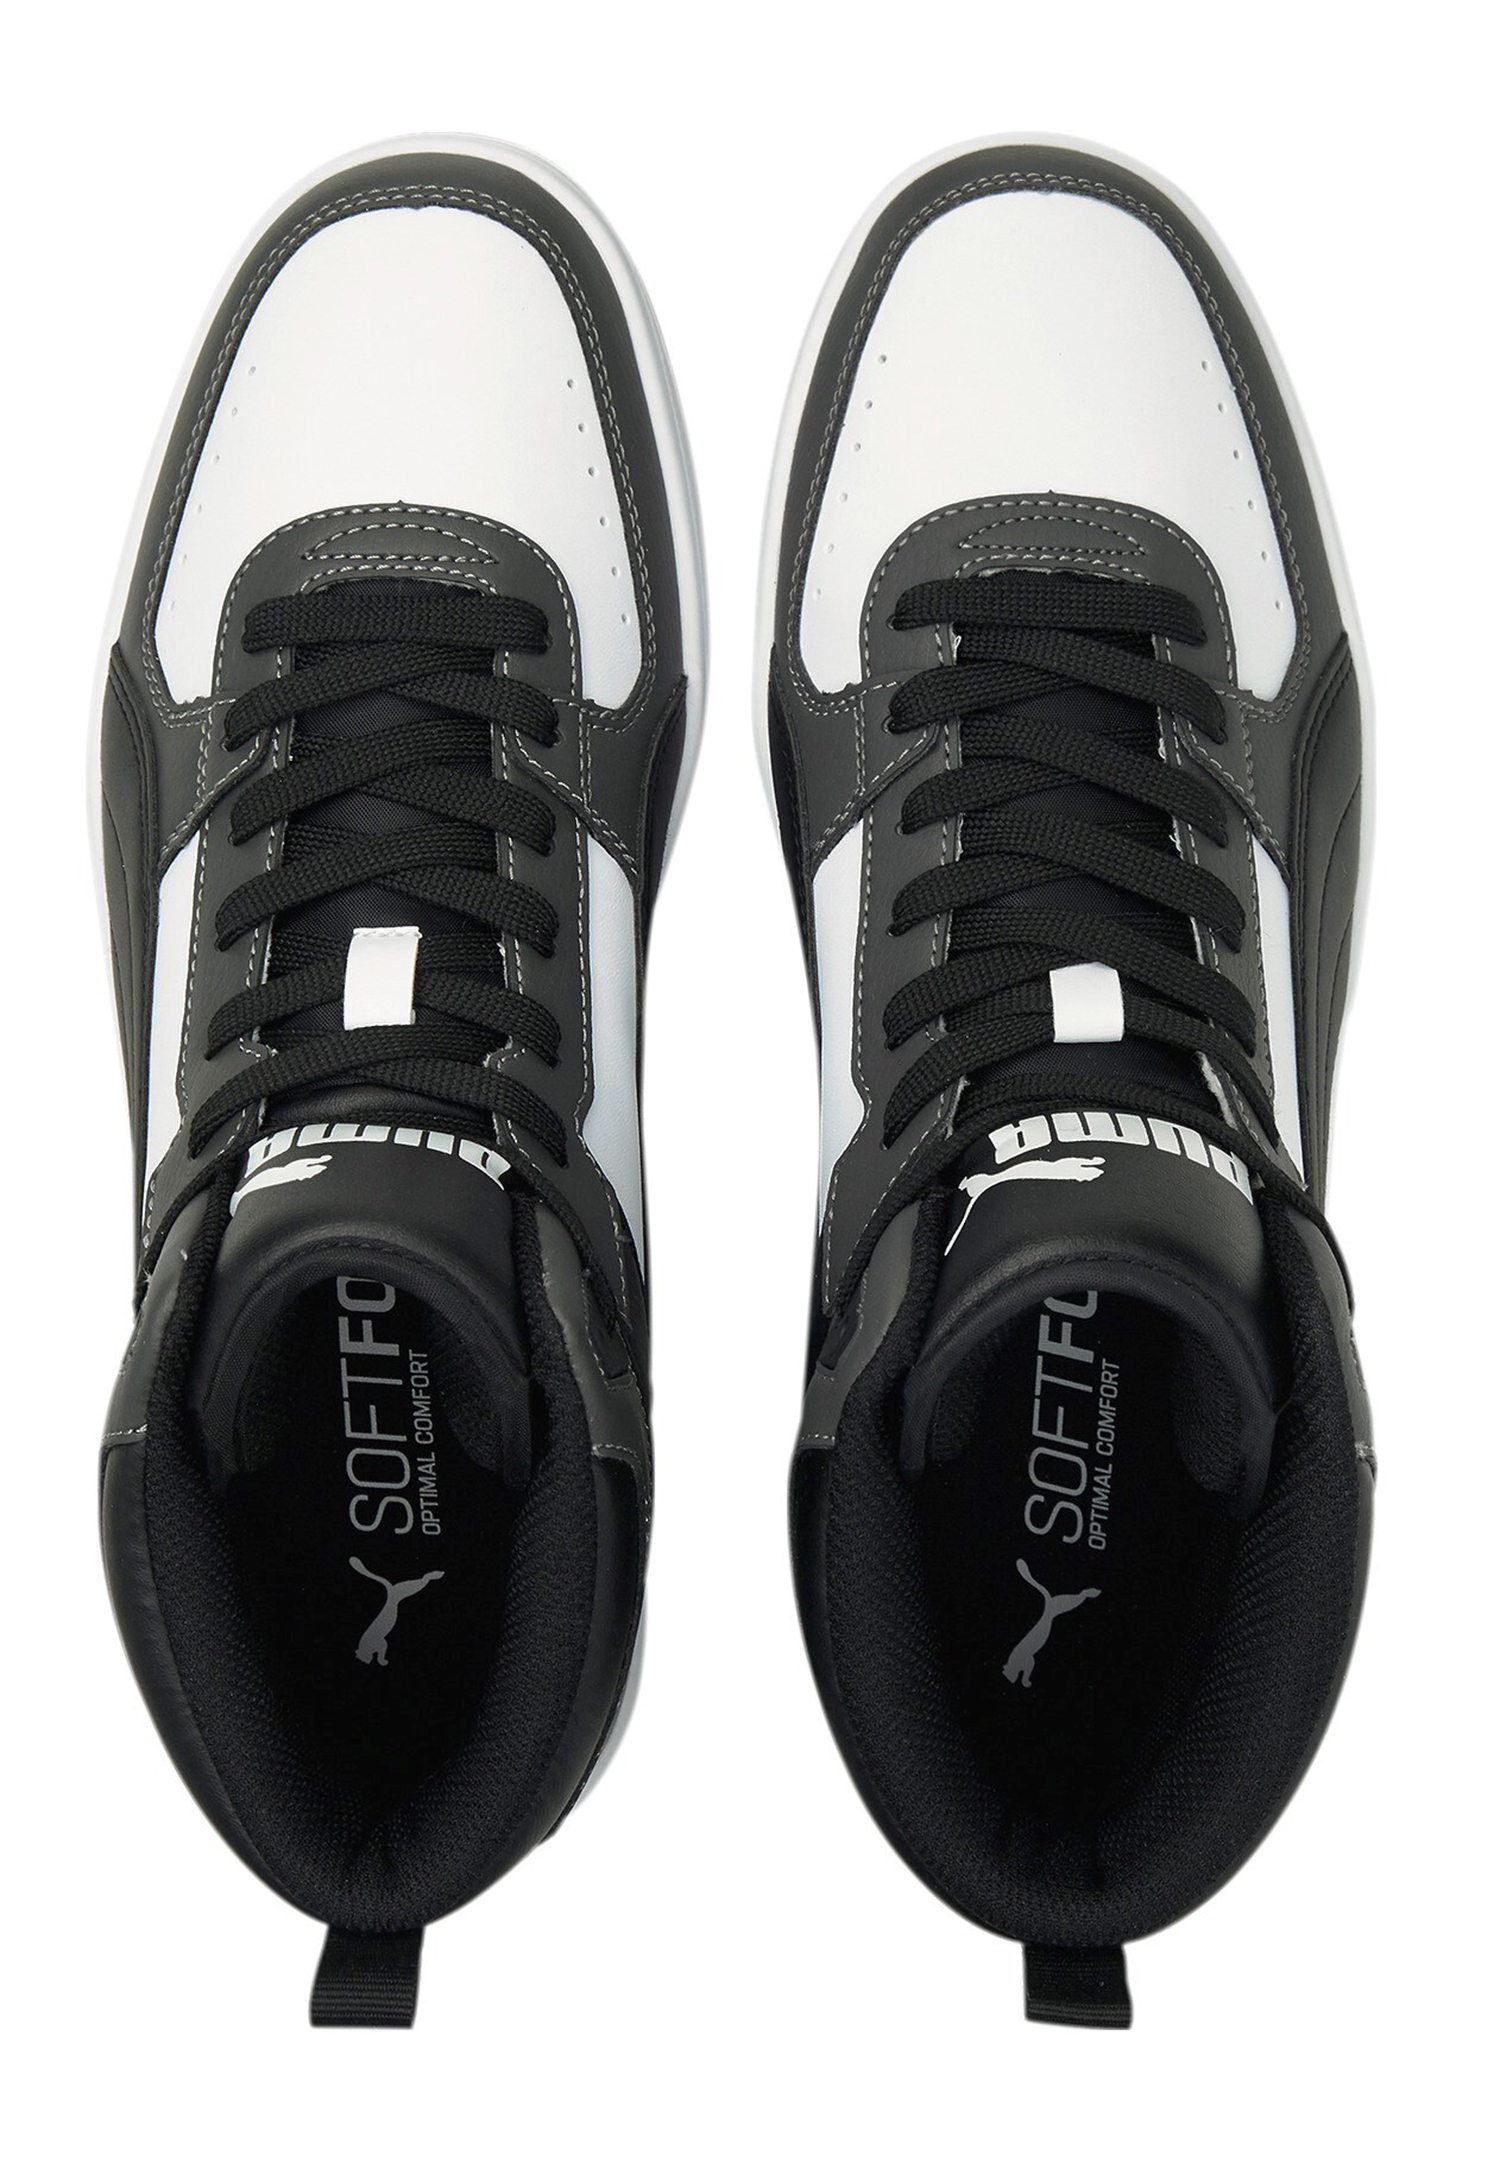 Puma Rebound JOY High Top Herren Sneaker Sportschuh 374765 weiss/grau/schwarz